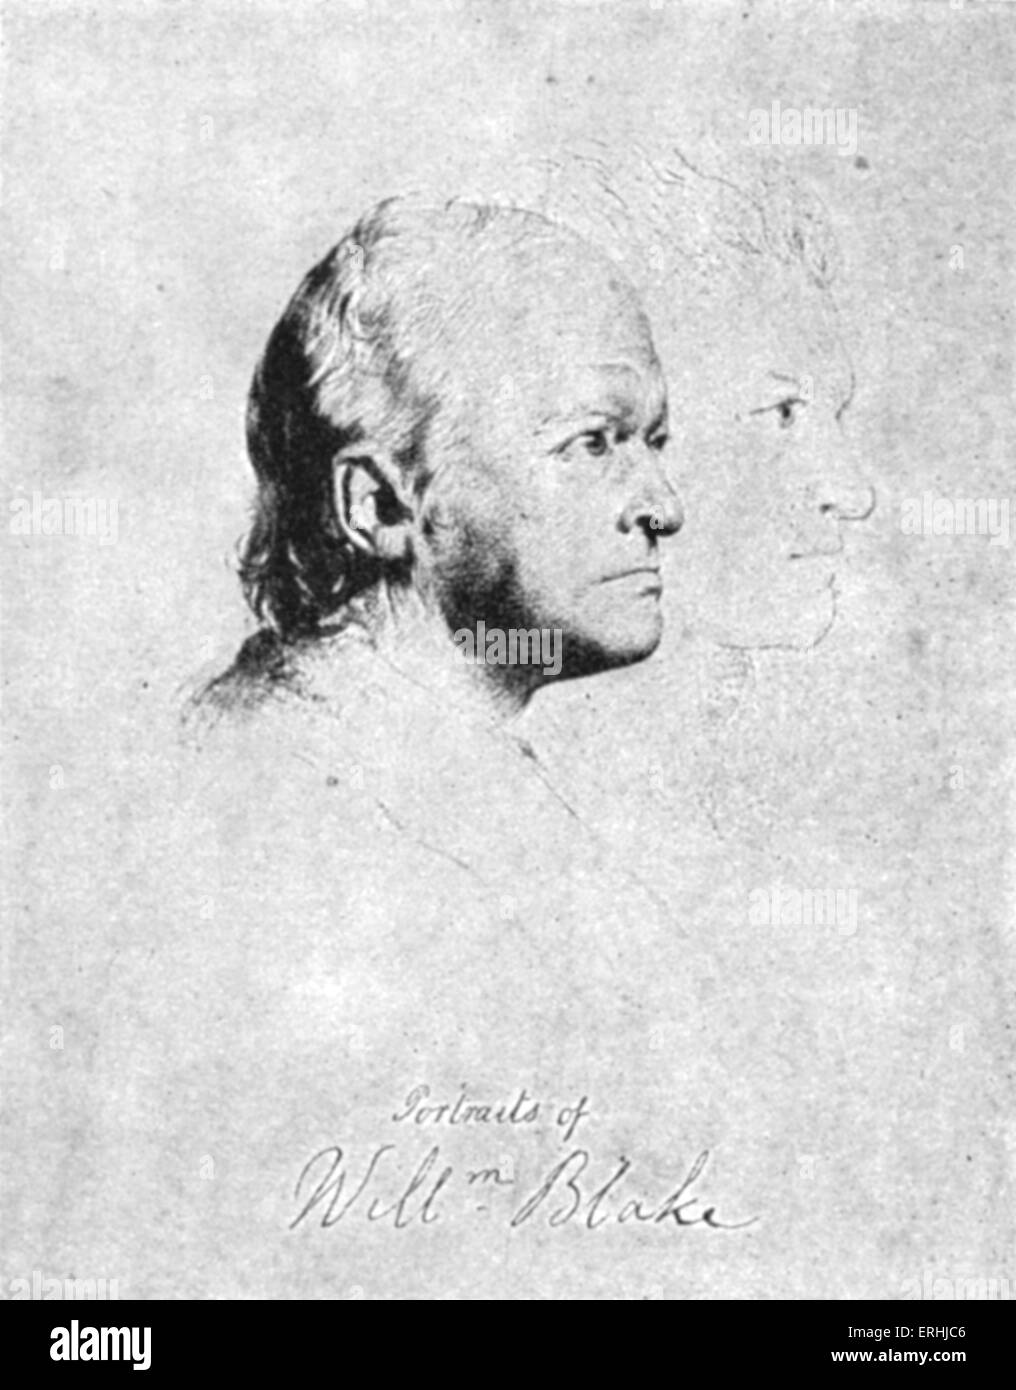 William Blake - signé l'auto-portrait du poète anglais, artiste et graveur. 28 novembre 1757 - 12 août 1827 Banque D'Images